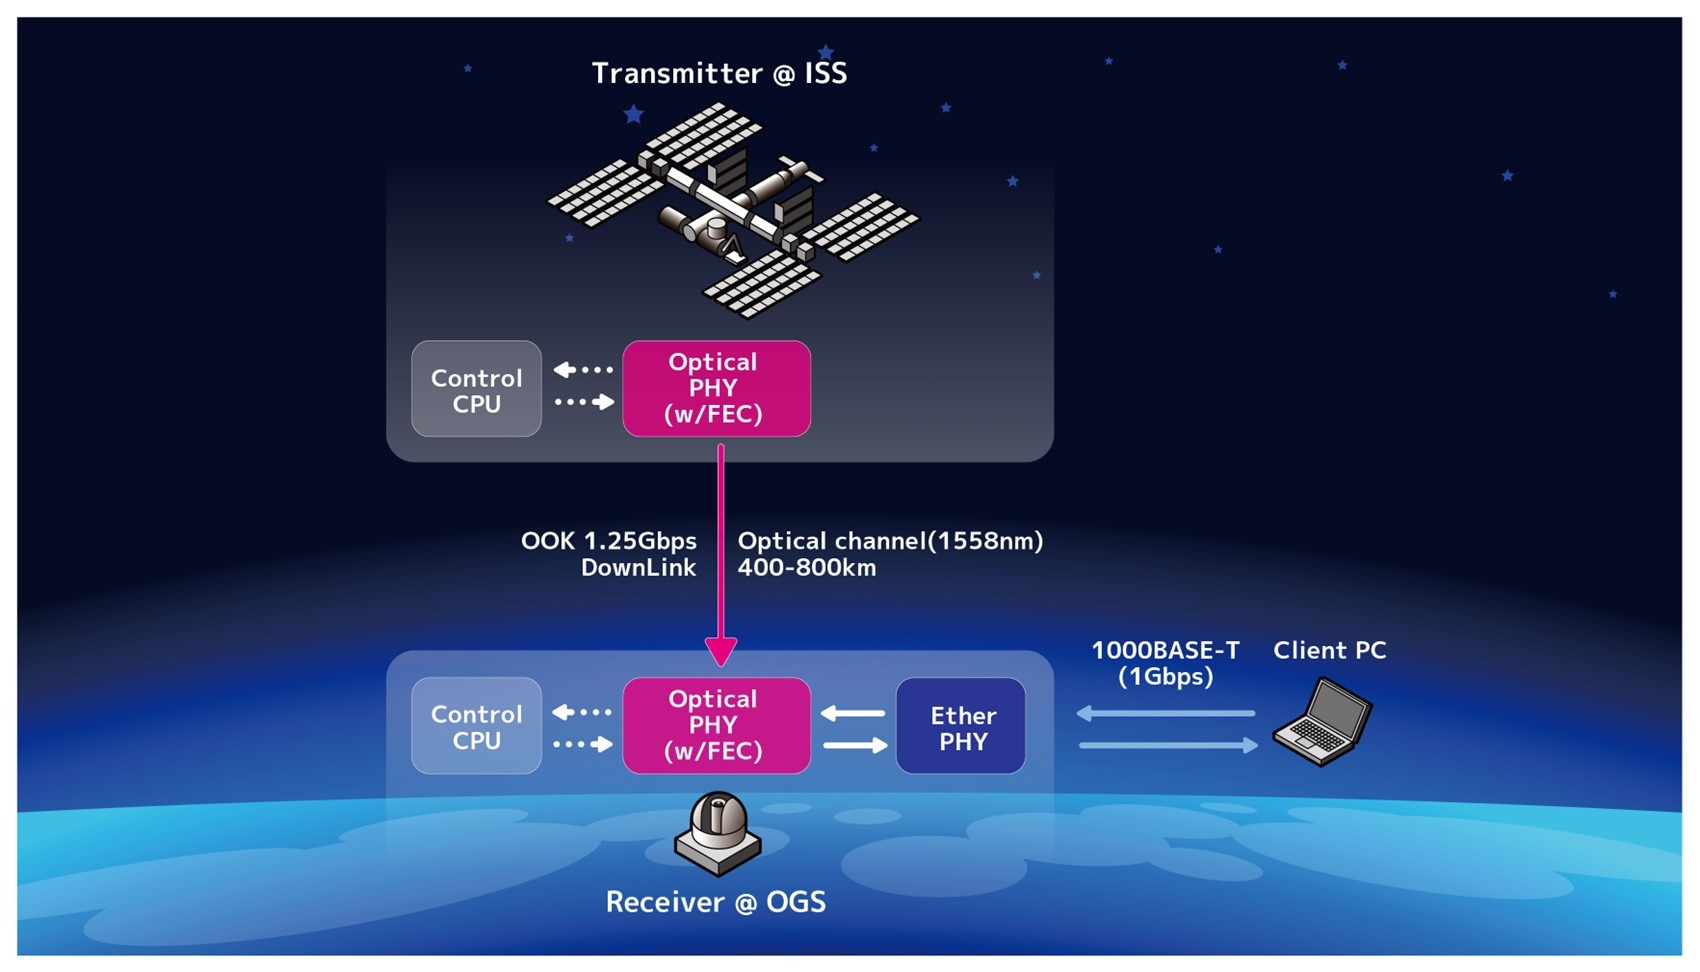 Sony CSL thử nghiệm thành công thiết bị xử lý tín hiệu tốc độ cao, truyền dữ liệu từ ISS - Trái Đất